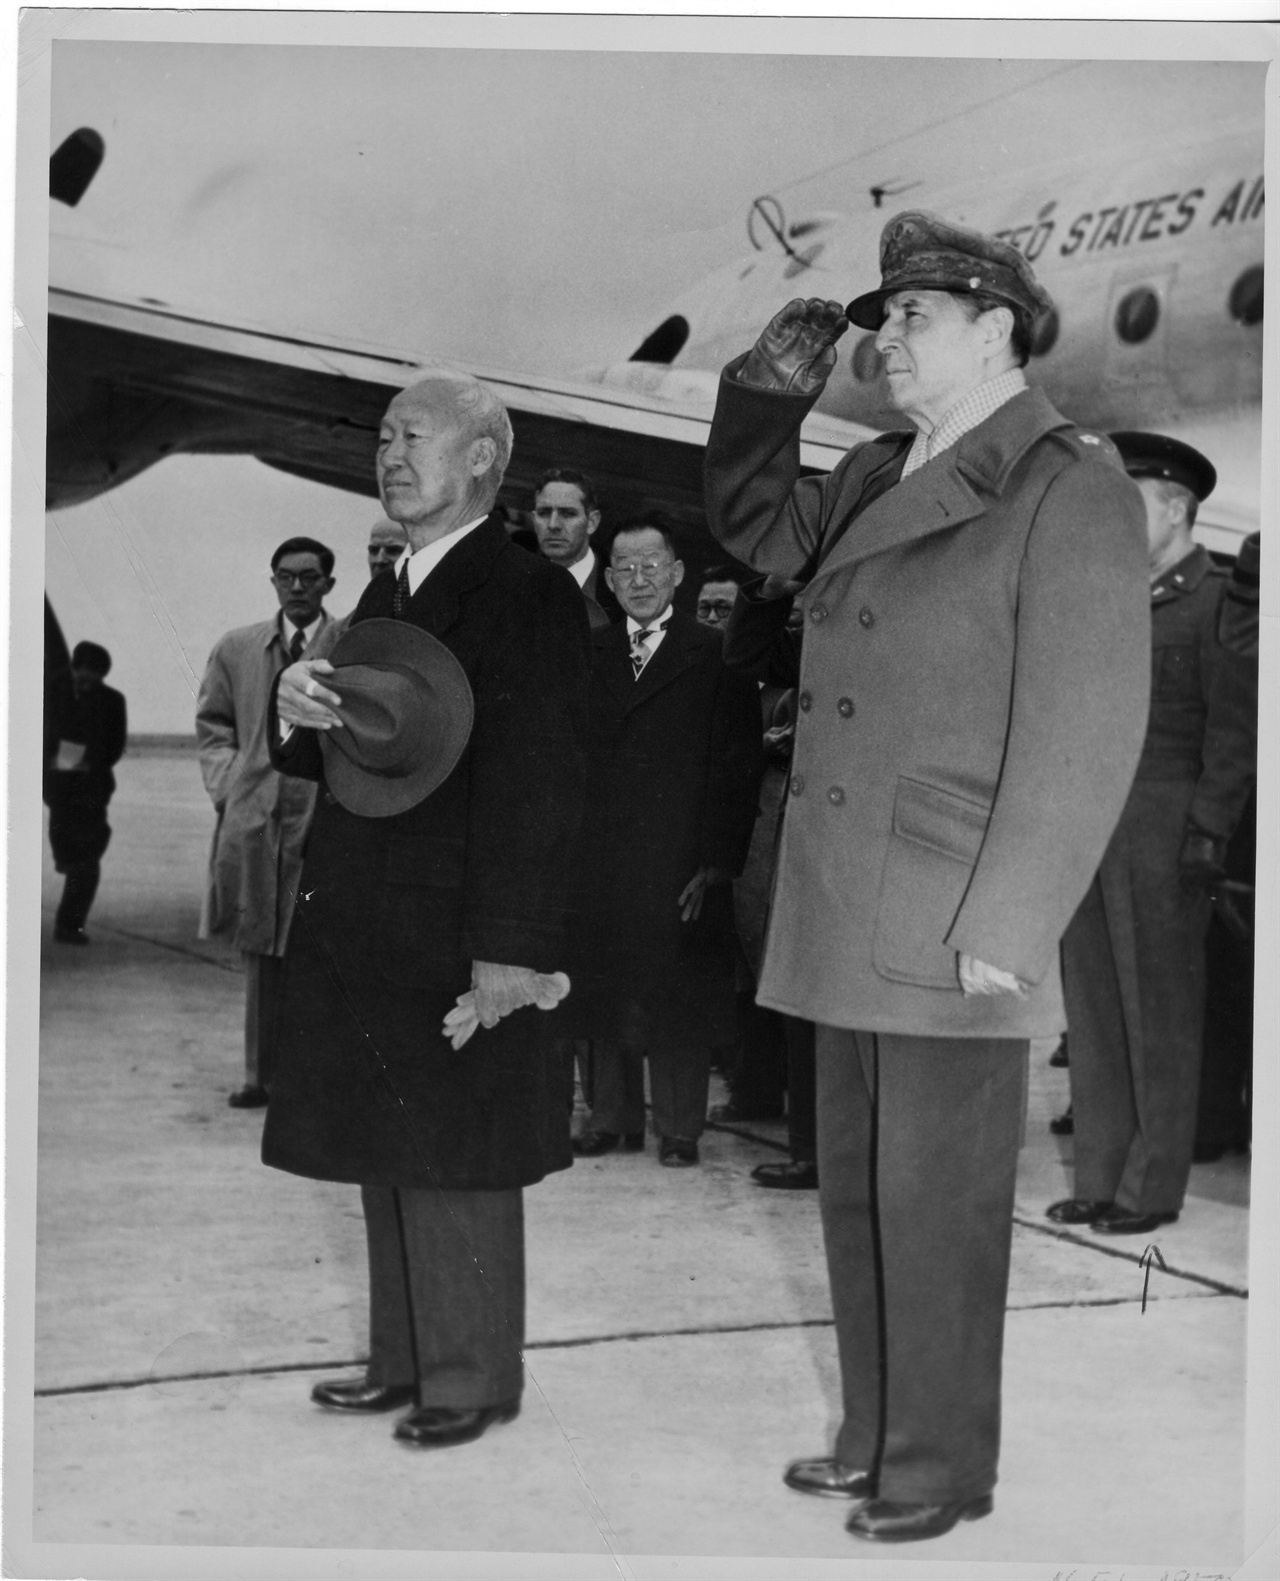  1950. 2. 16. 일본 도쿄. 이승만 대통령이 도쿄 하네다 공항에 도착하여 양국 국기에 경례하고 있다(오른쪽은 맥아더 장군).